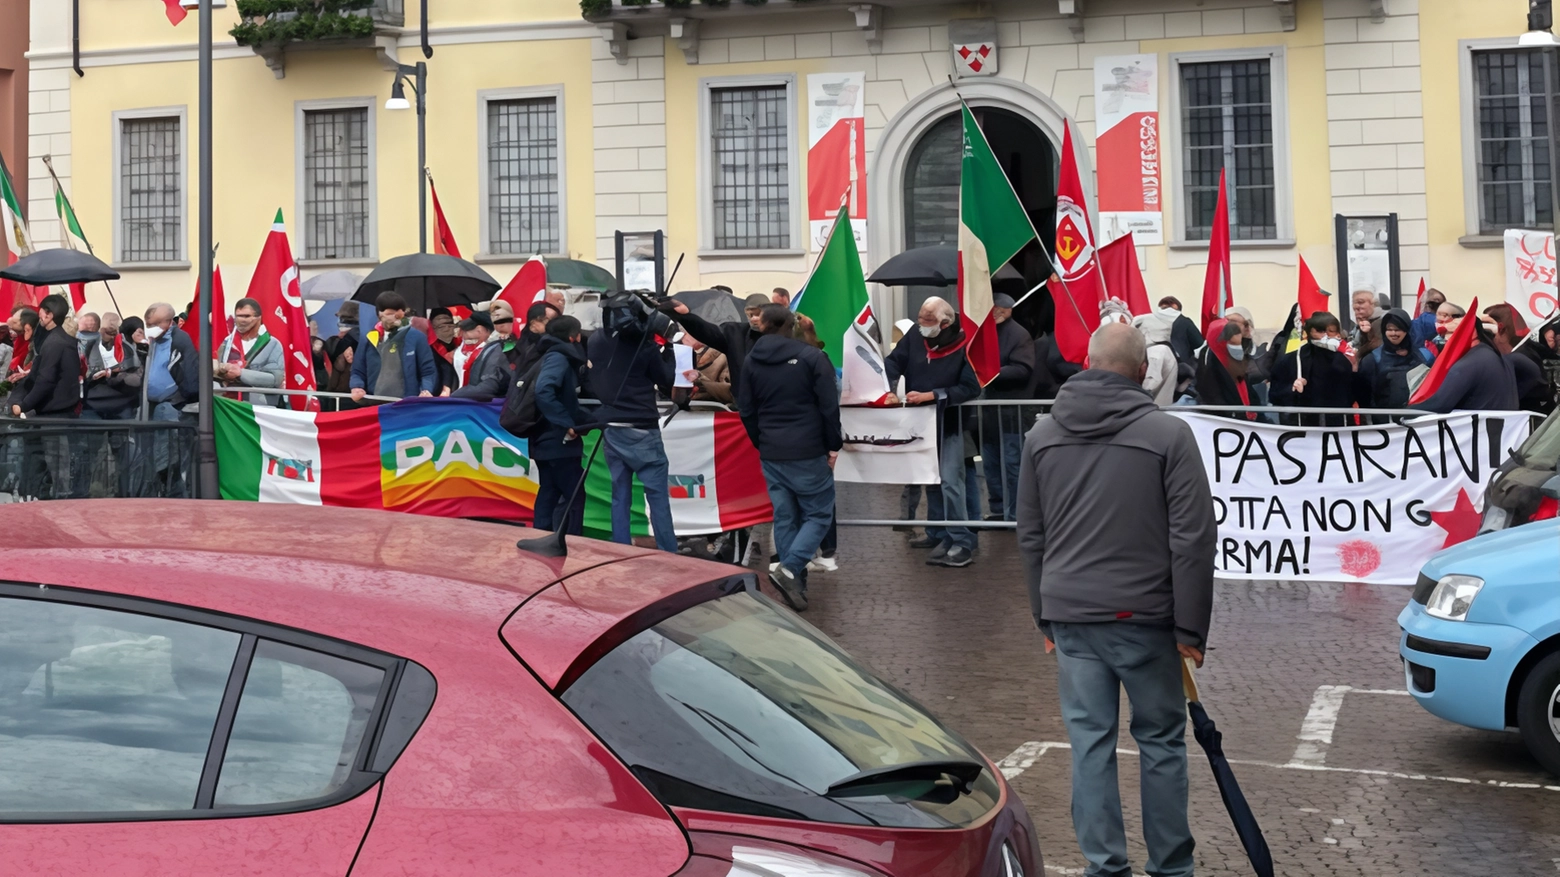 L’appuntamento domenica 28 aprile sul Lago di Como. L'Anpi e altre associazioni annunciano una protesta. Il Movimento 5 Stelle parteciperà alla contro-manifestazione